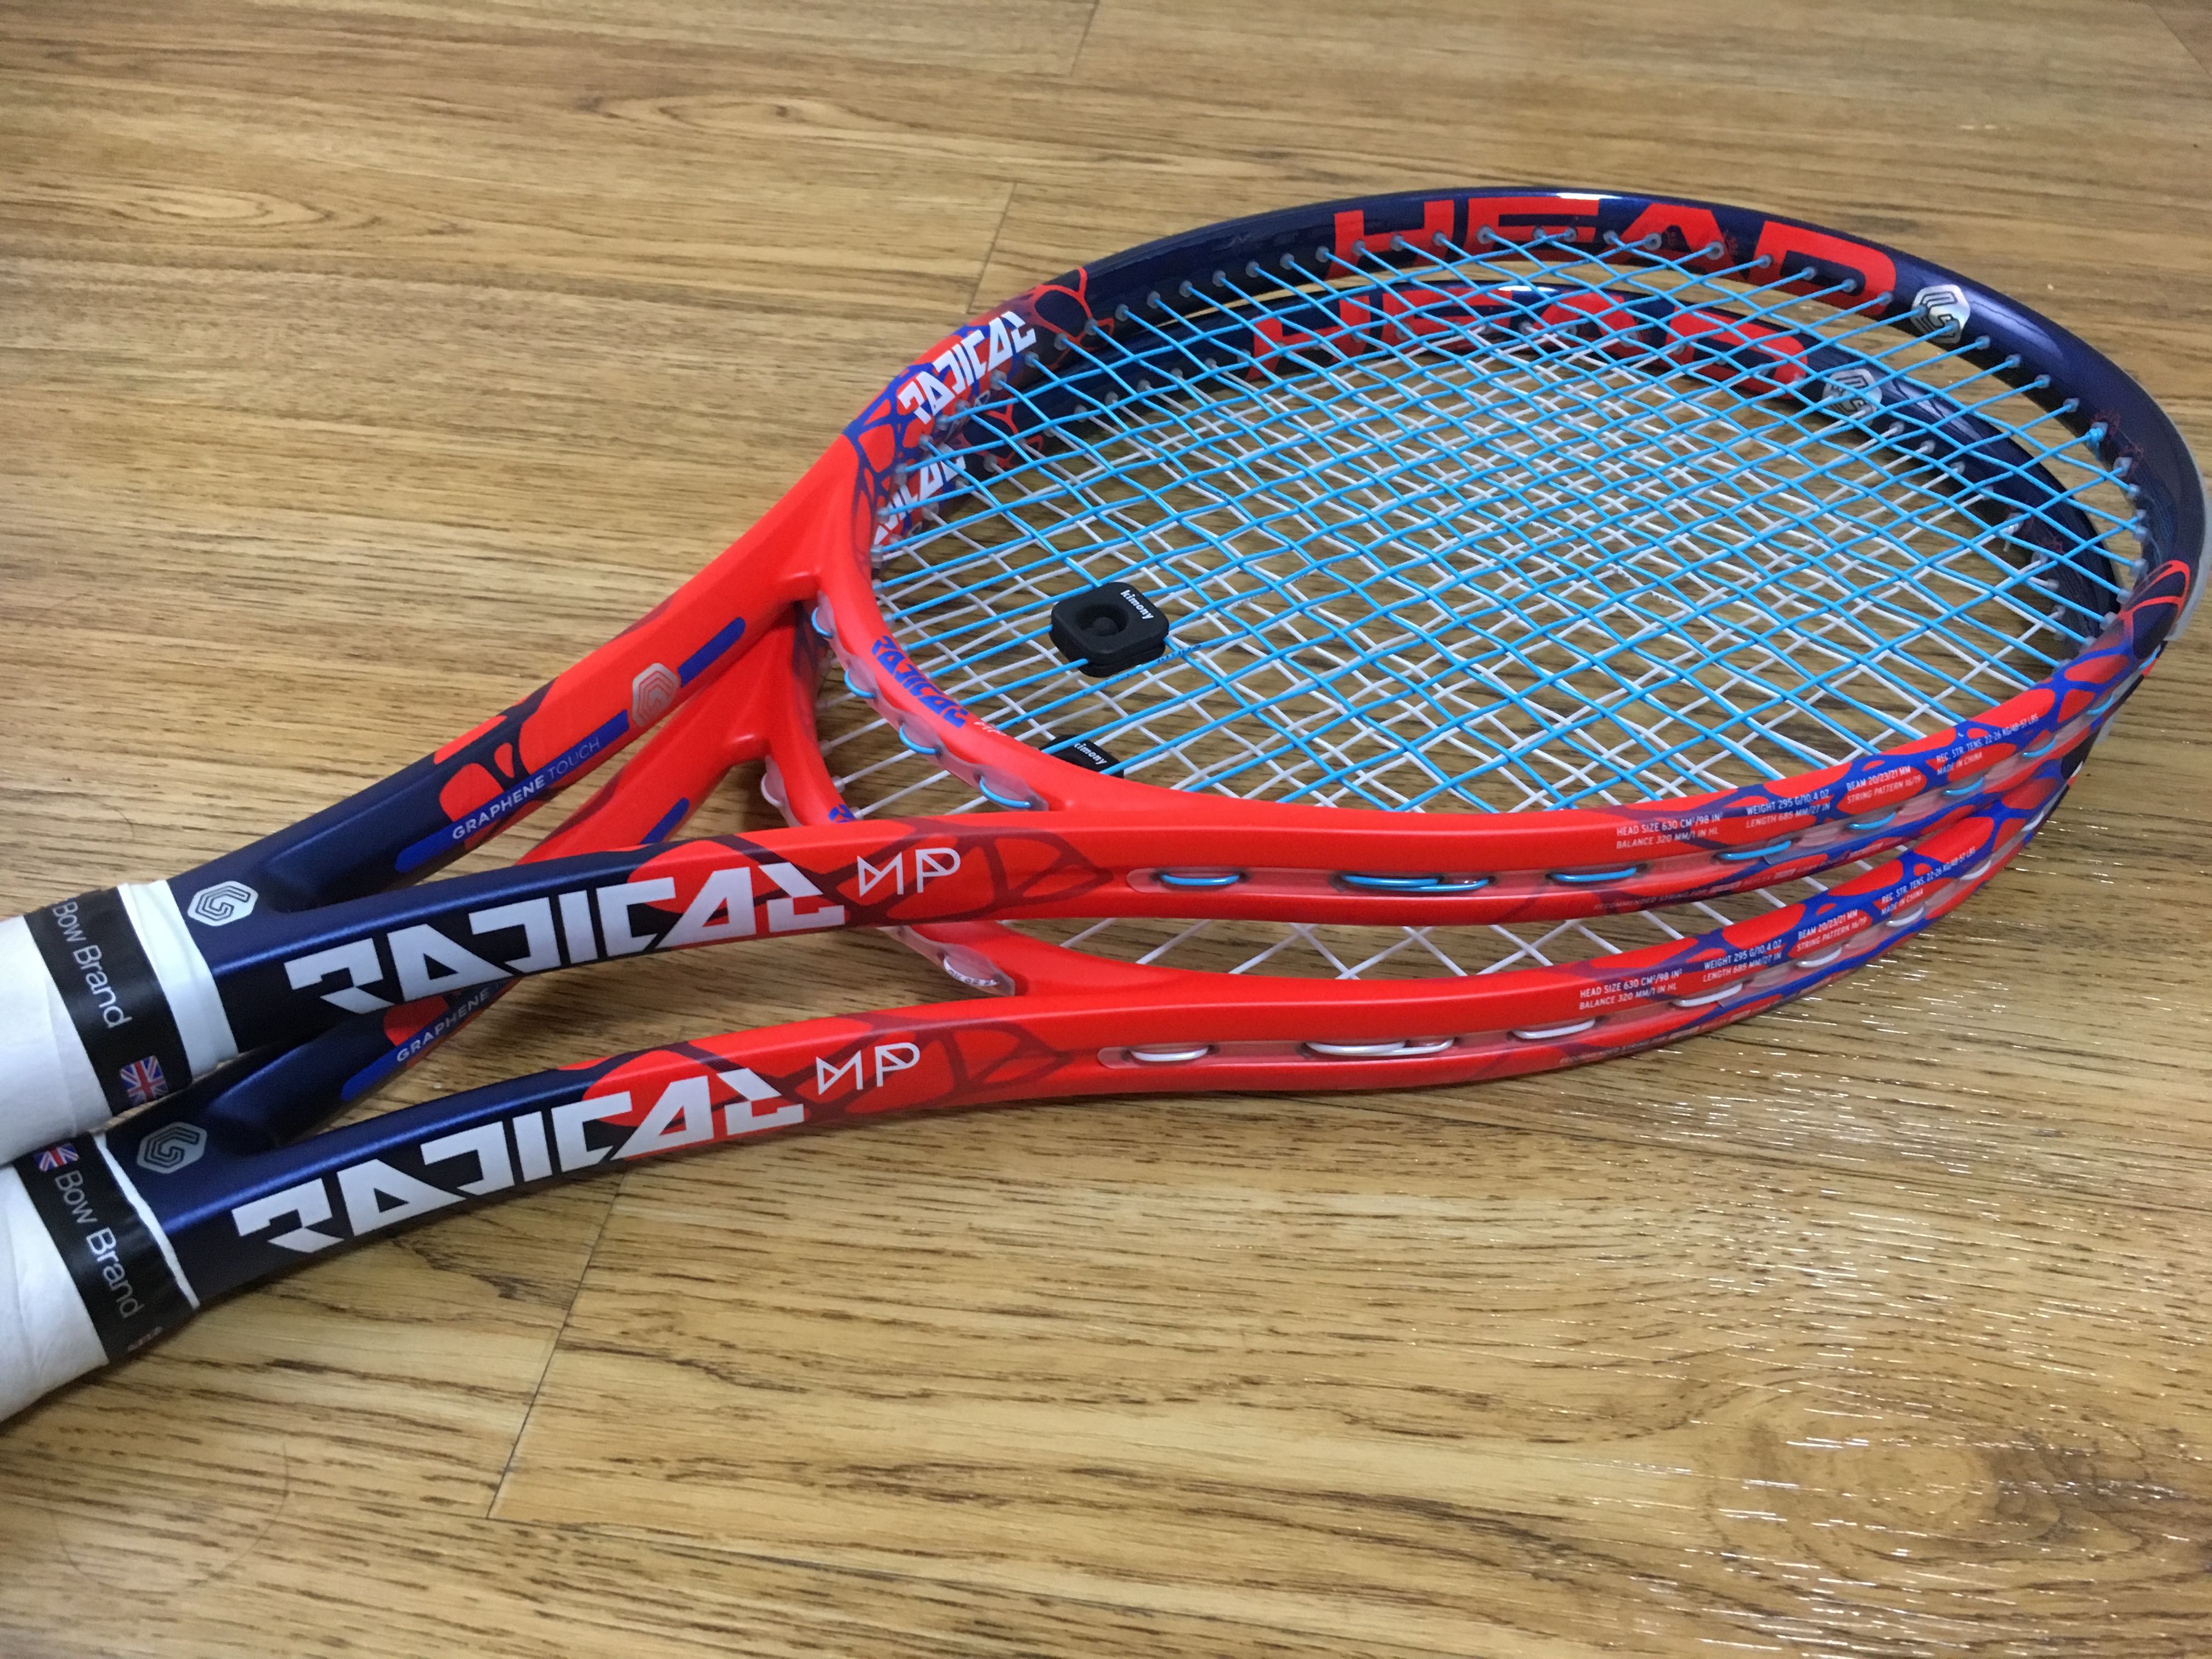 テニスラケット ヘッド グラフィン ラジカル エス 2014年モデル (G2)HEAD GRAPHENE RADICAL S 2014